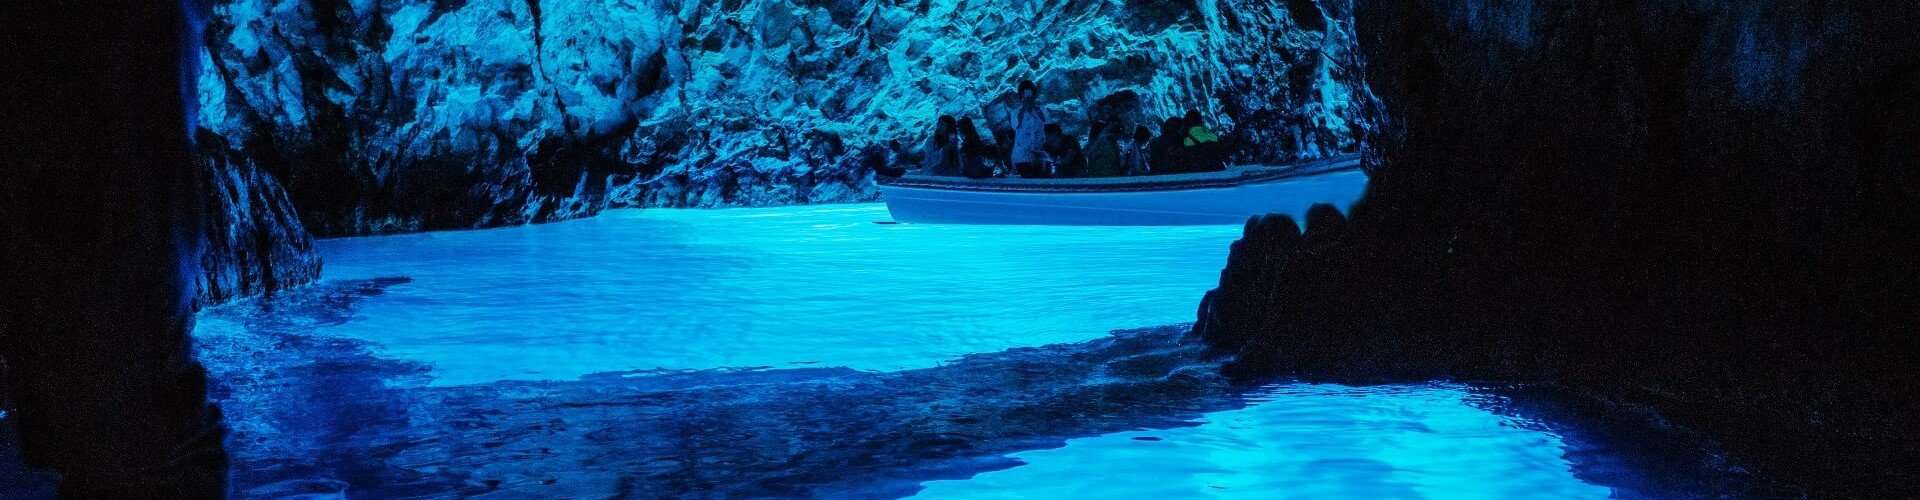 Blaue Grotte von Biševo